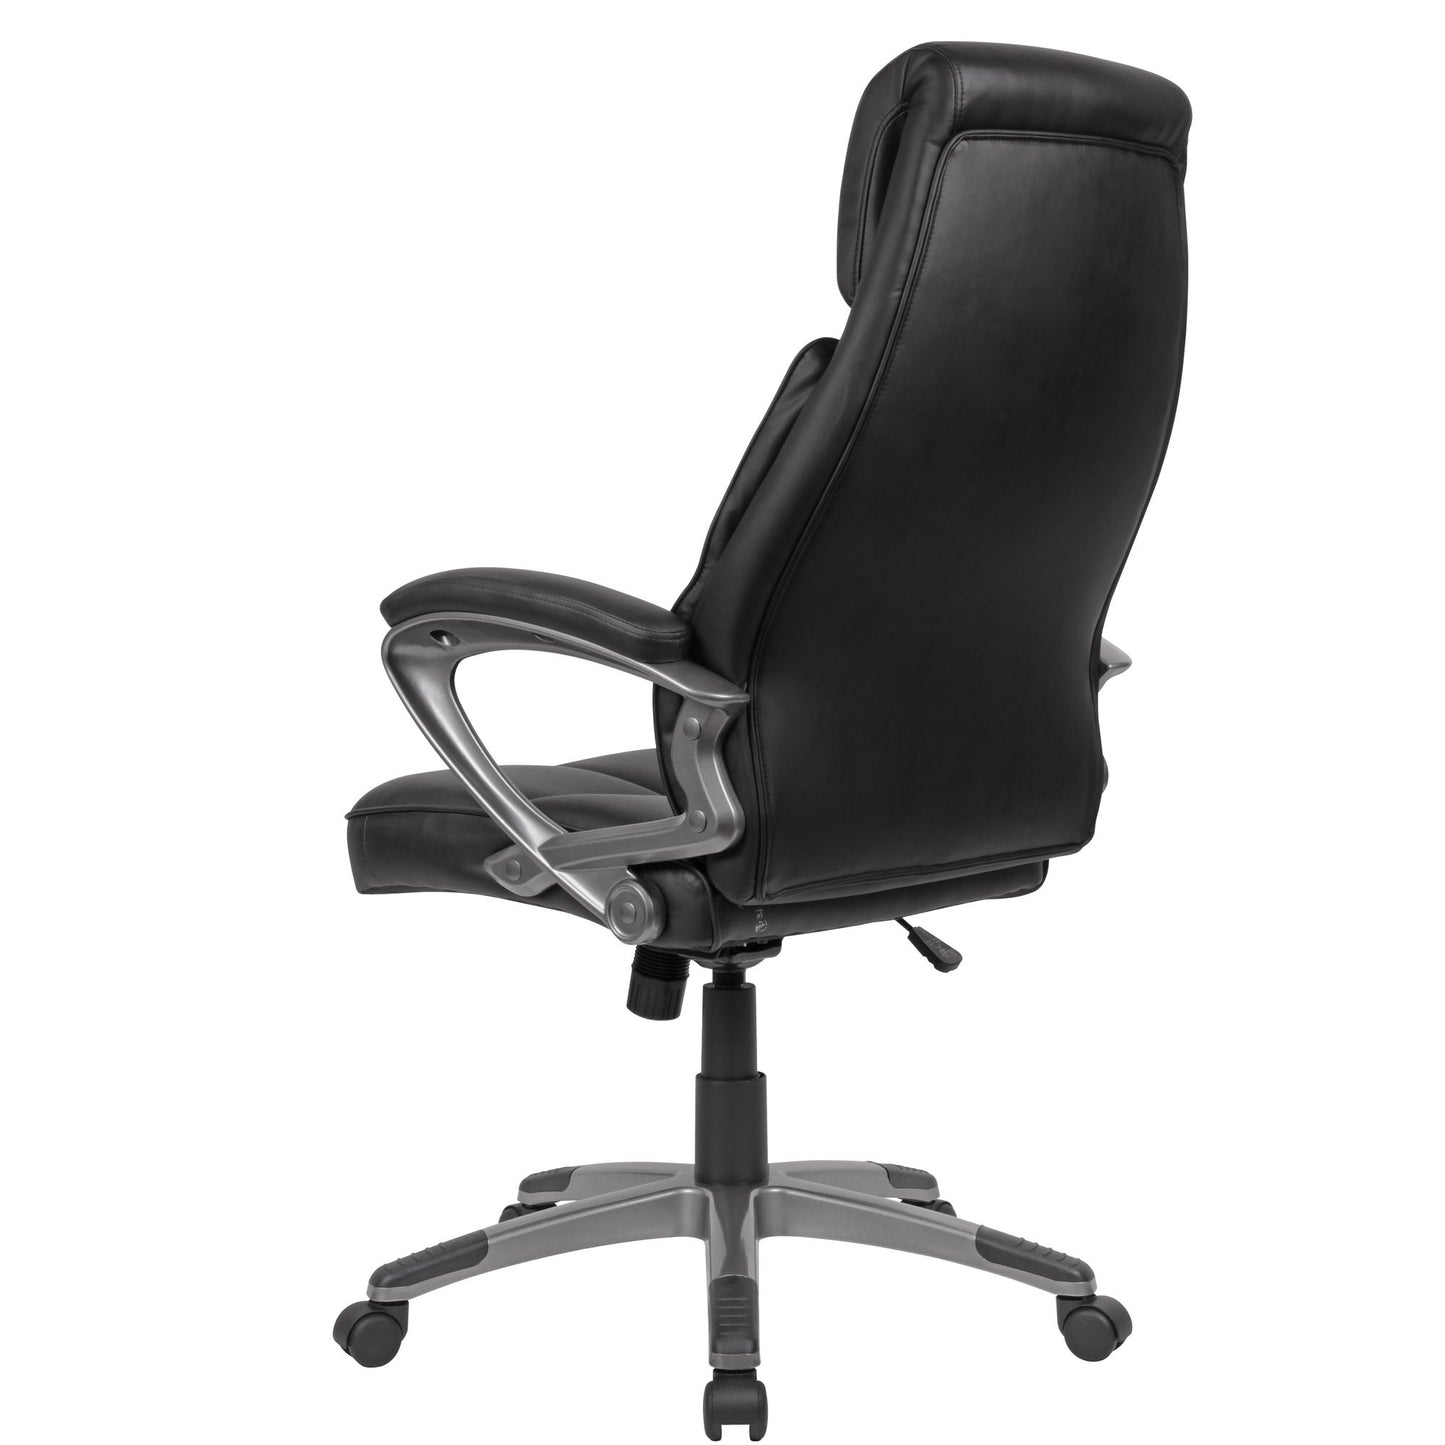 Chaise de bureau Nancy's Flint - Chaise pivotante - Chaise de bureau - Chaises de bureau - Simili cuir - Noir